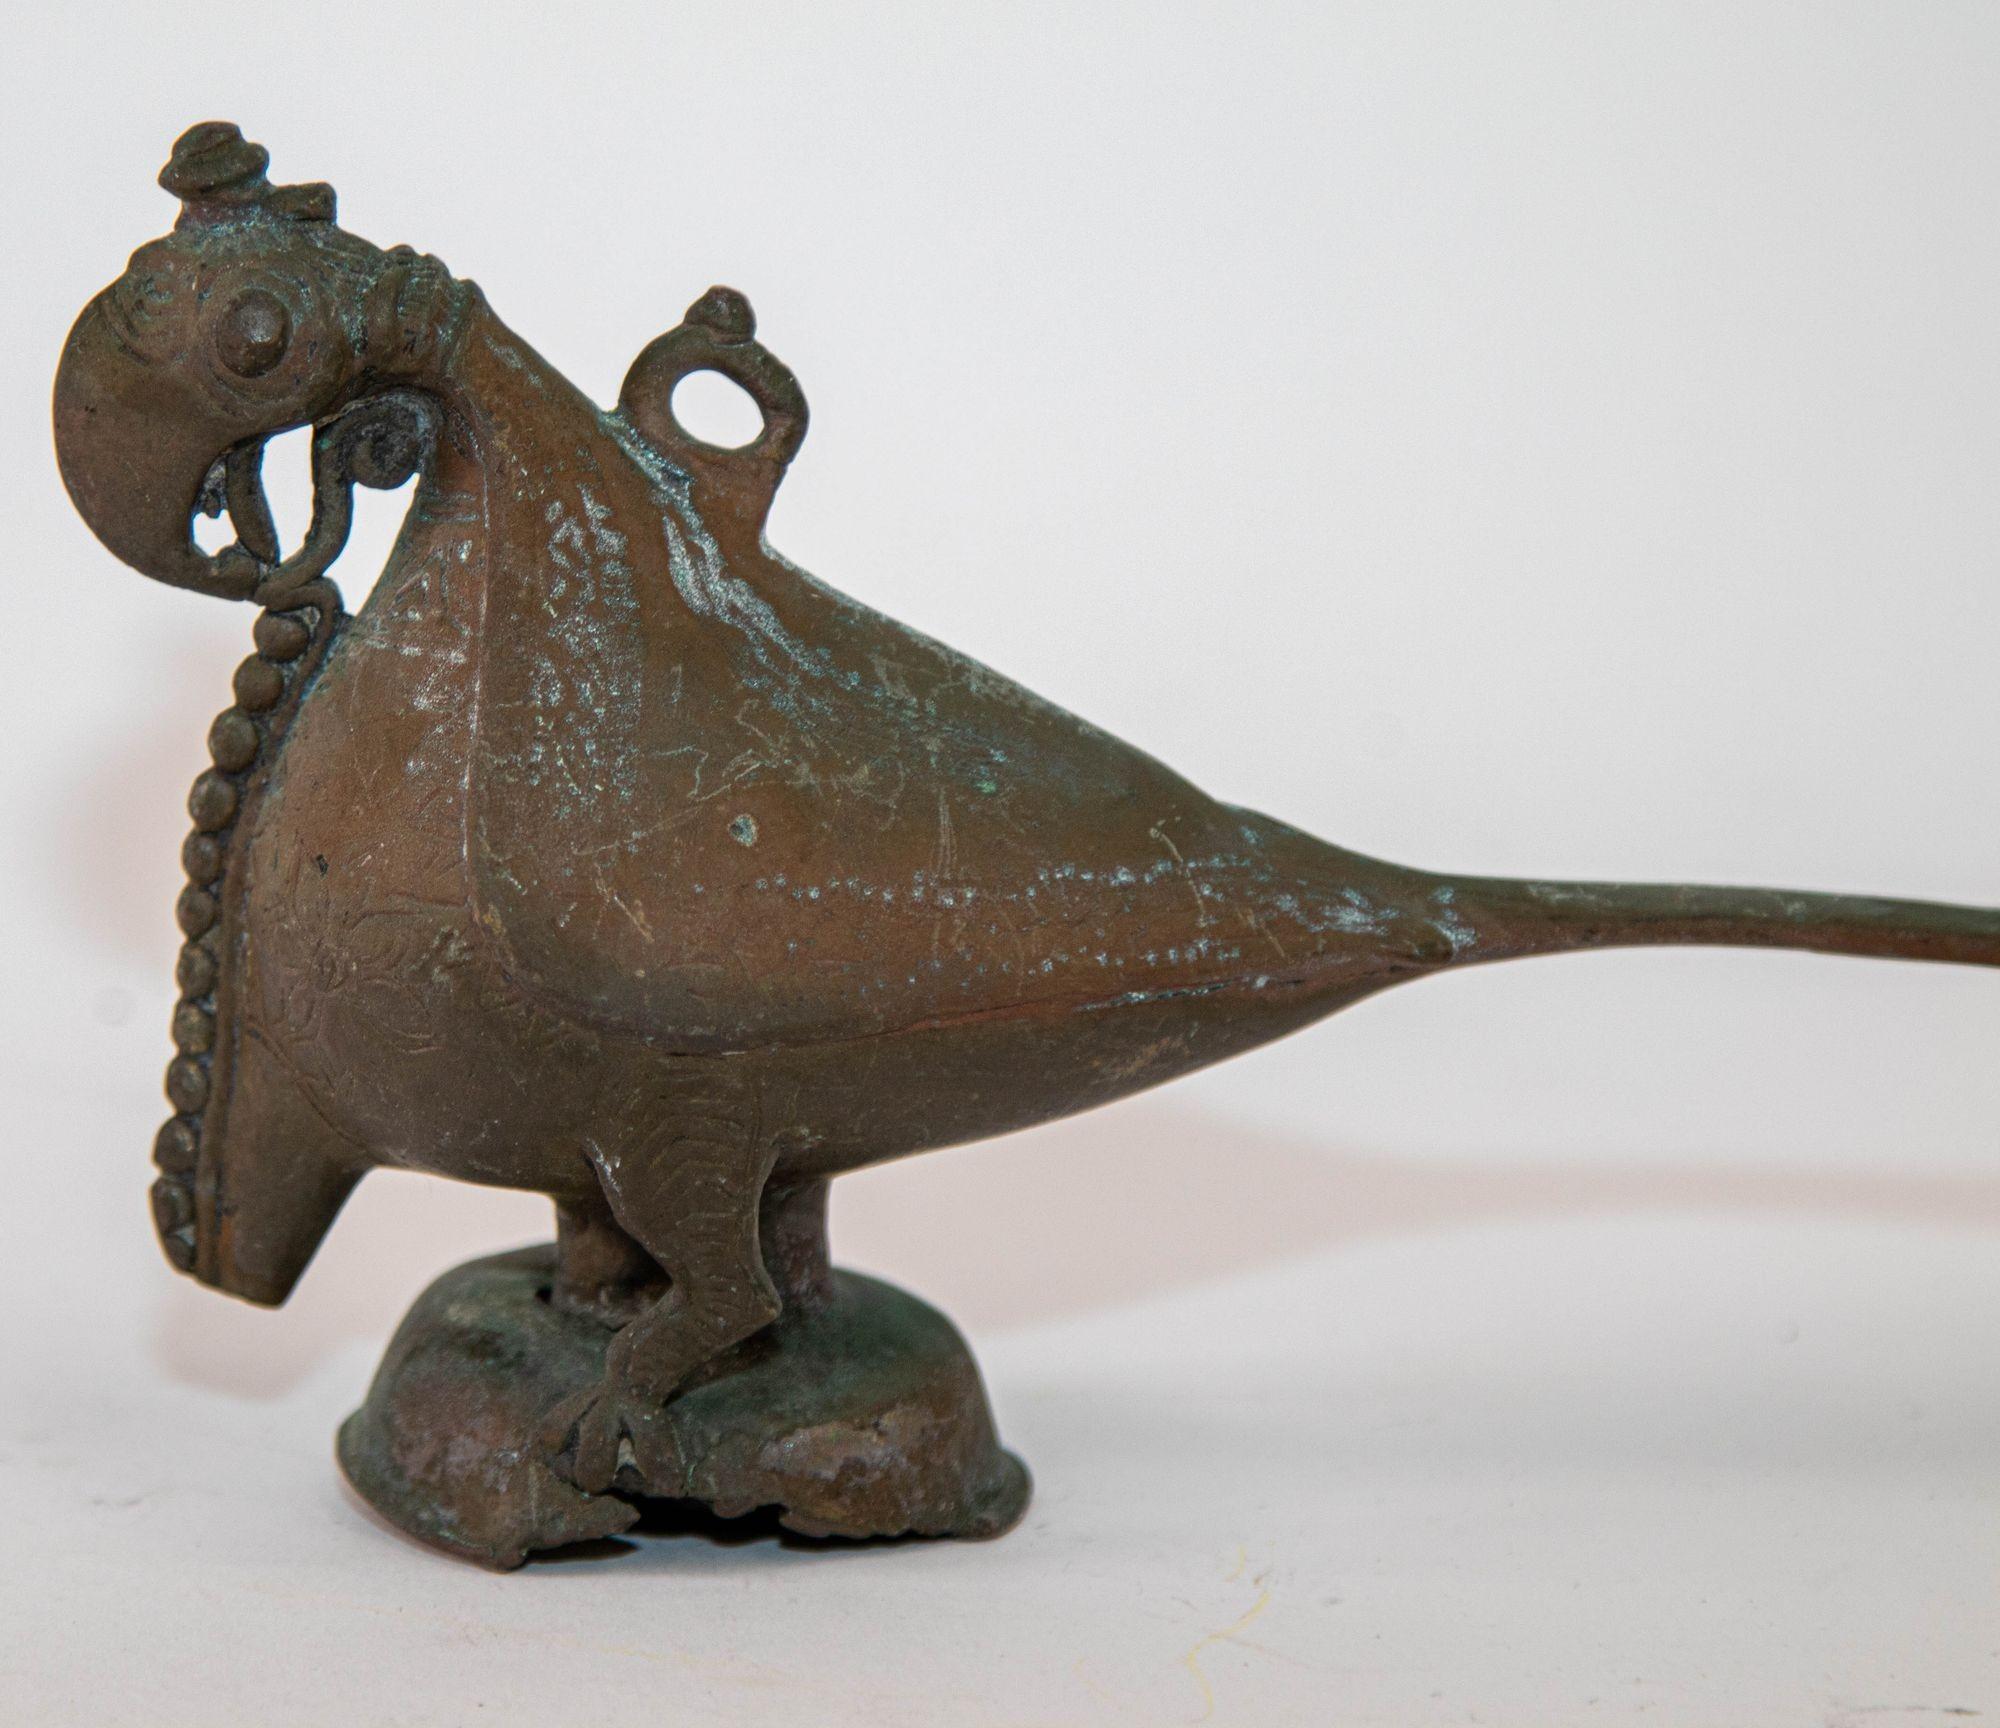 Antike indische Bronze Papagei Figur Öllampe Rajasthan, Bronze Hamsa Lampe Finial, Nordindien, 19. Jahrhundert vor.
Die eingravierte Verzierung dieses antiken Ölbehälters ist an einigen Stellen vollständig abgenutzt und hinterlässt eine glatte,